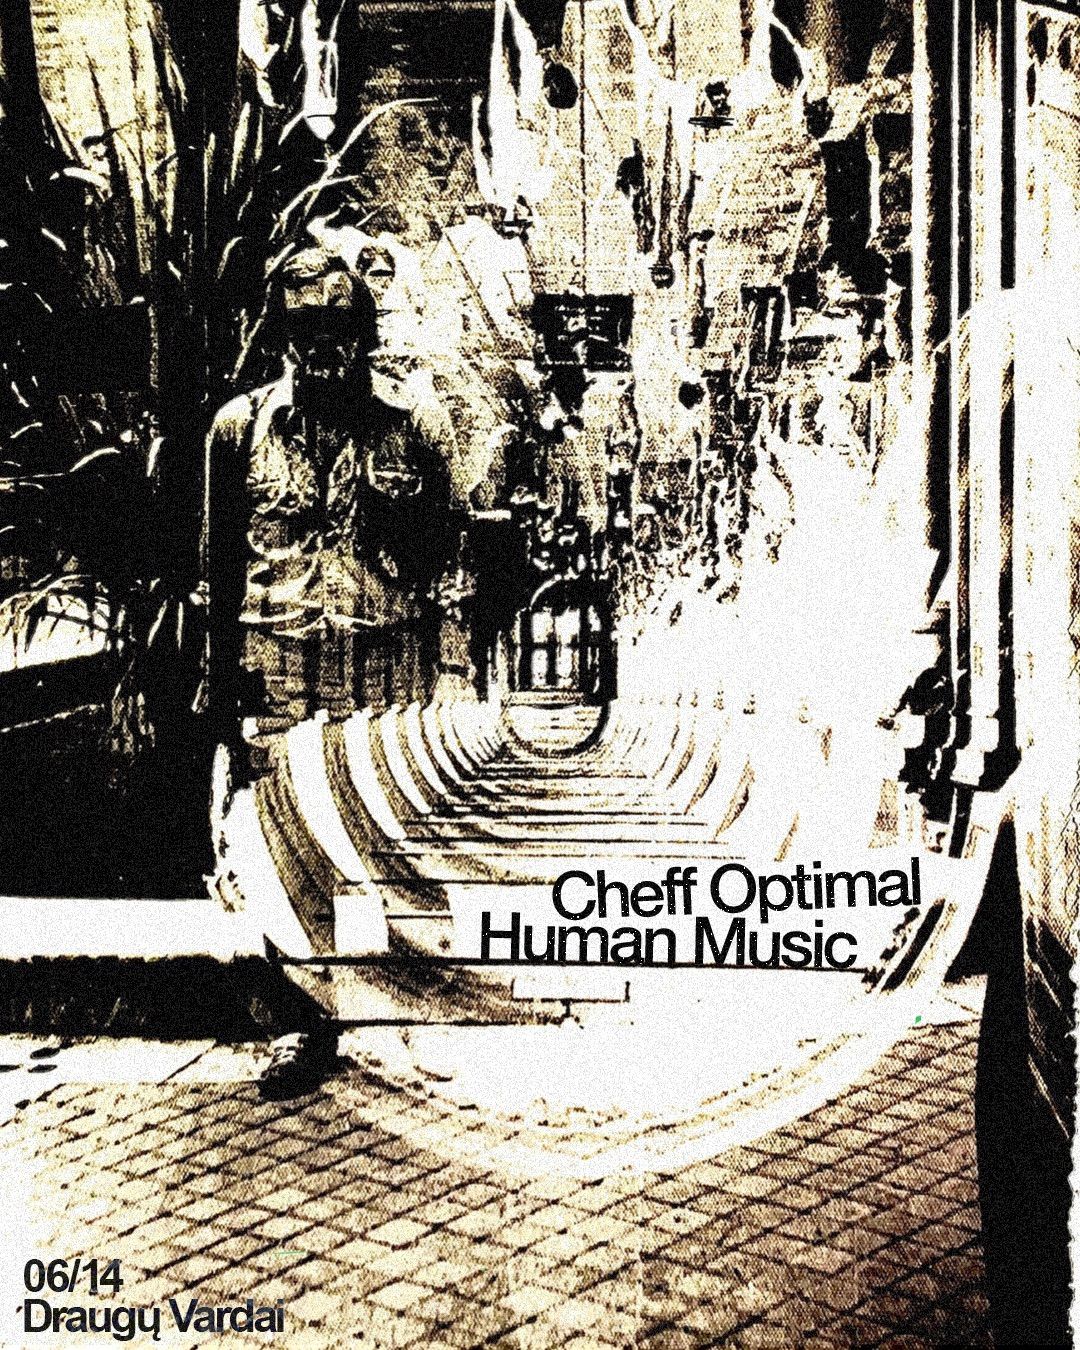 Cheff Optimal & Human Music